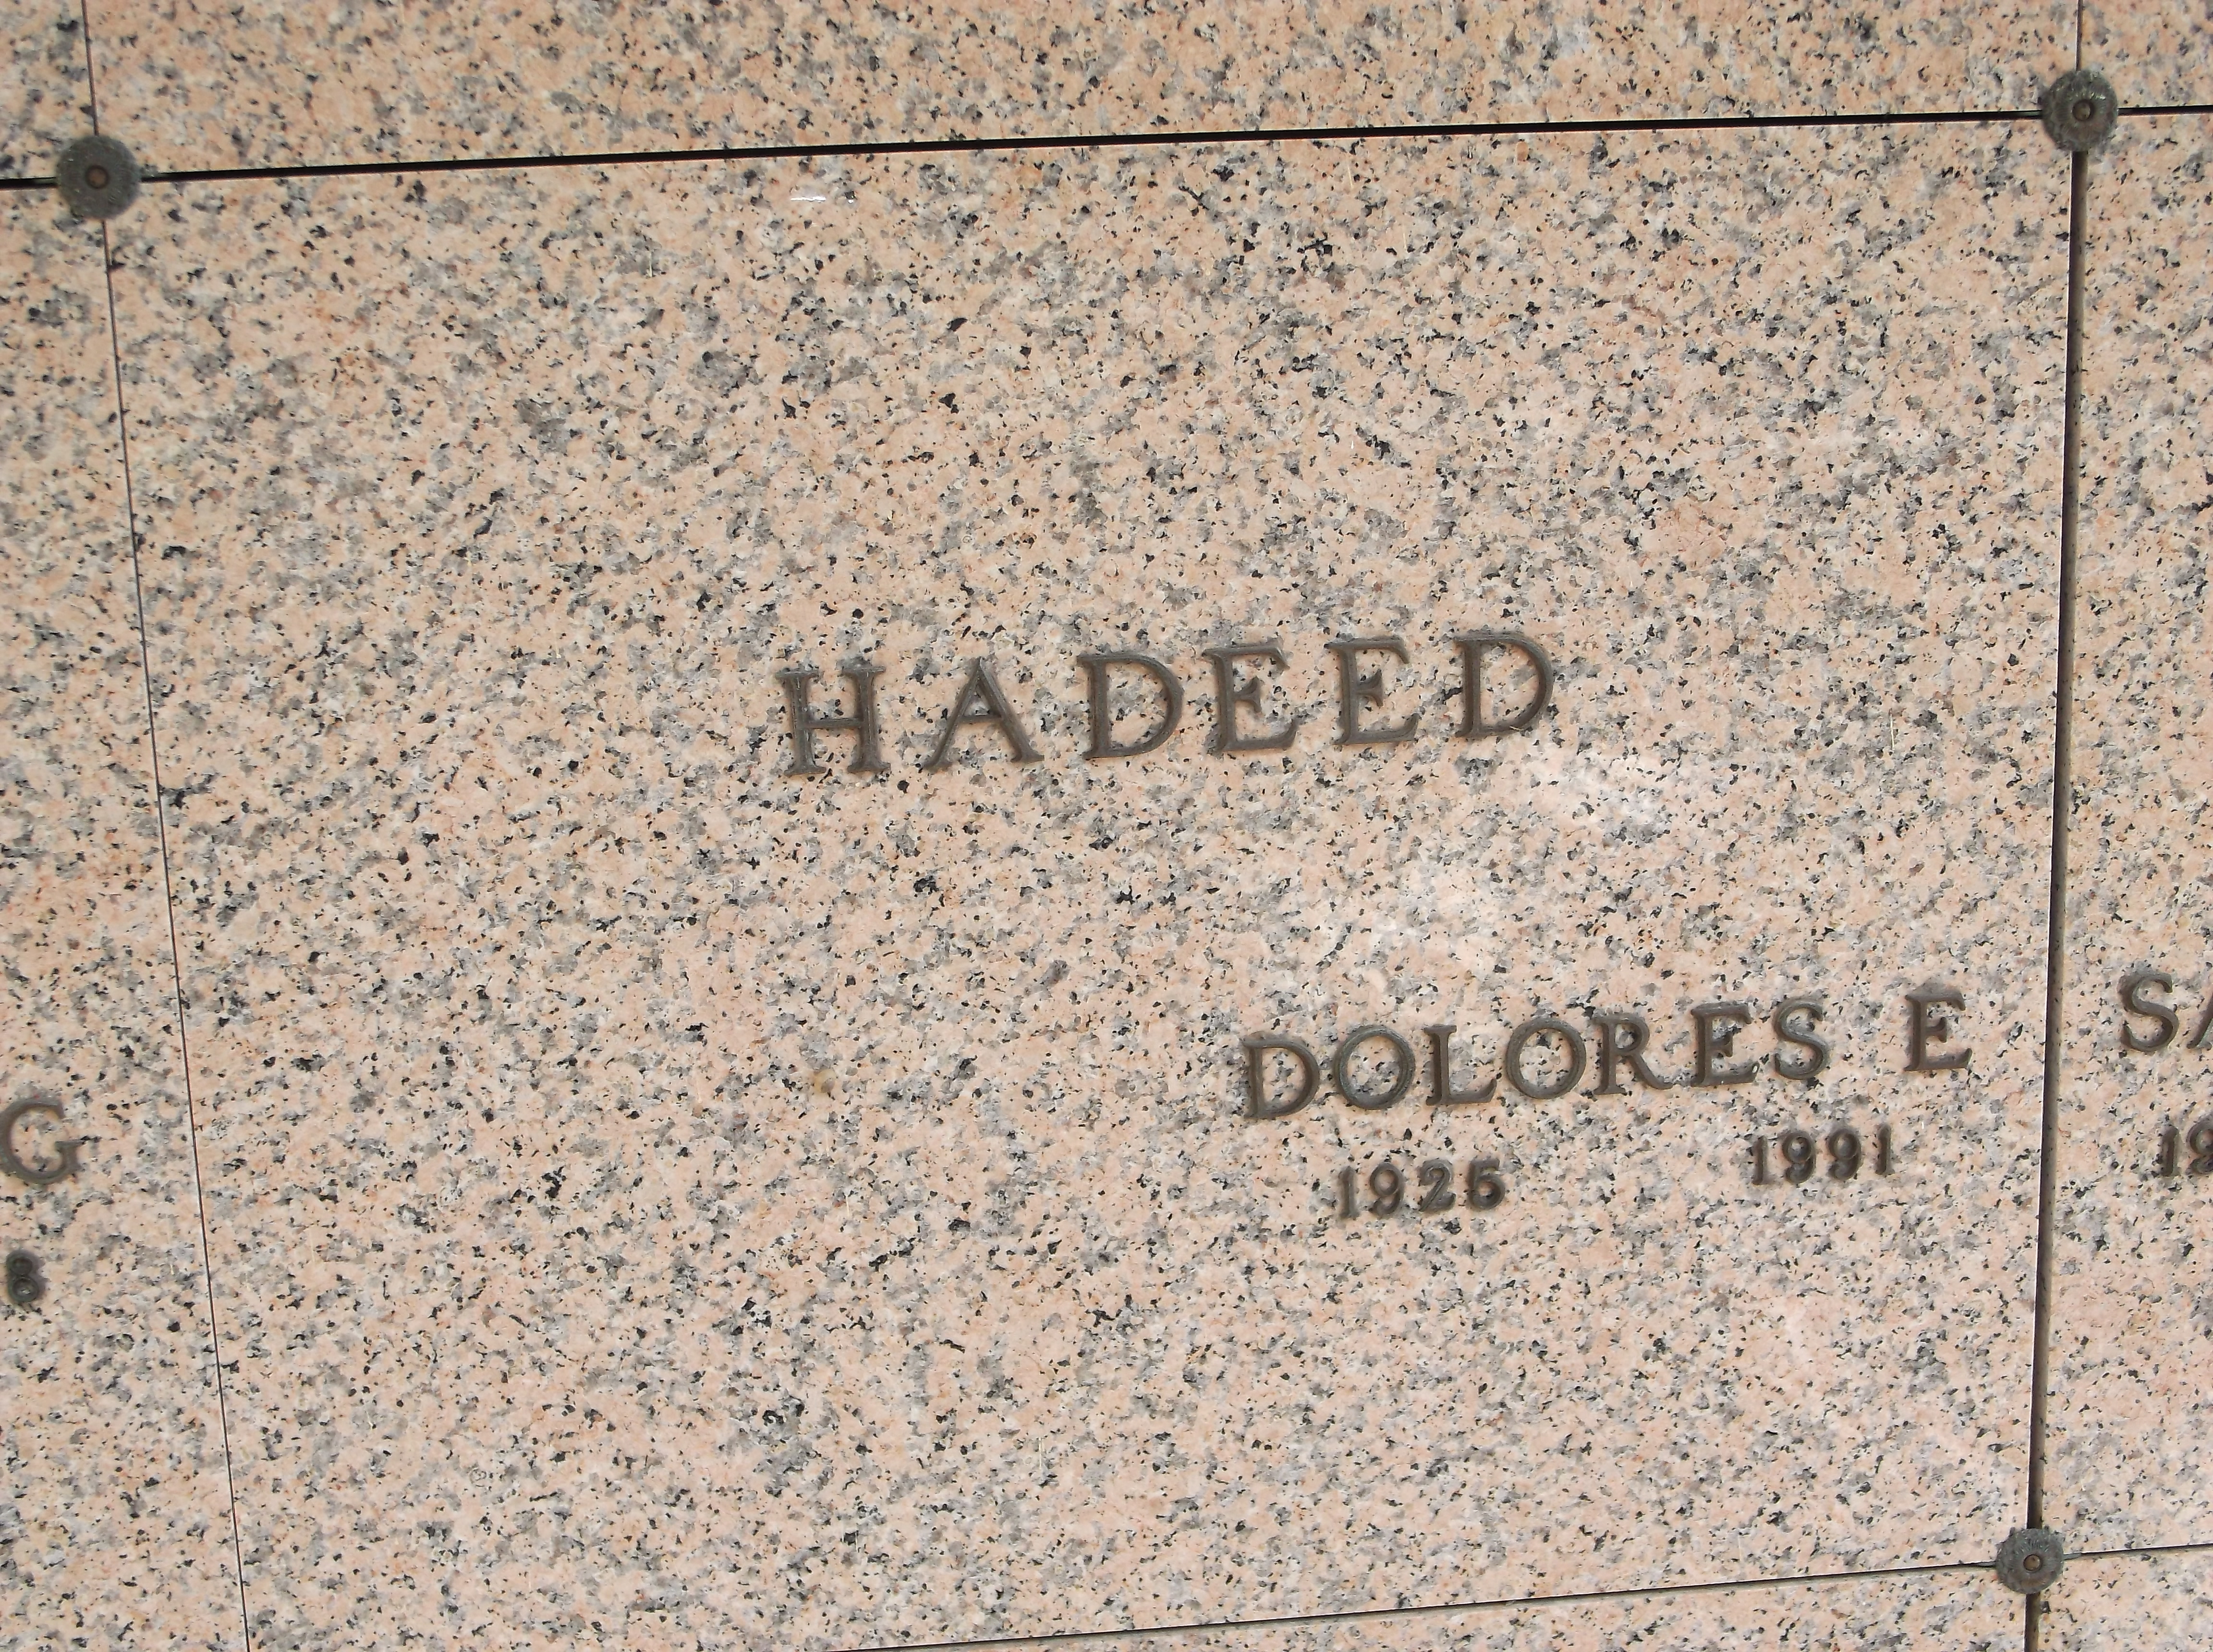 Dolores E Hadeed